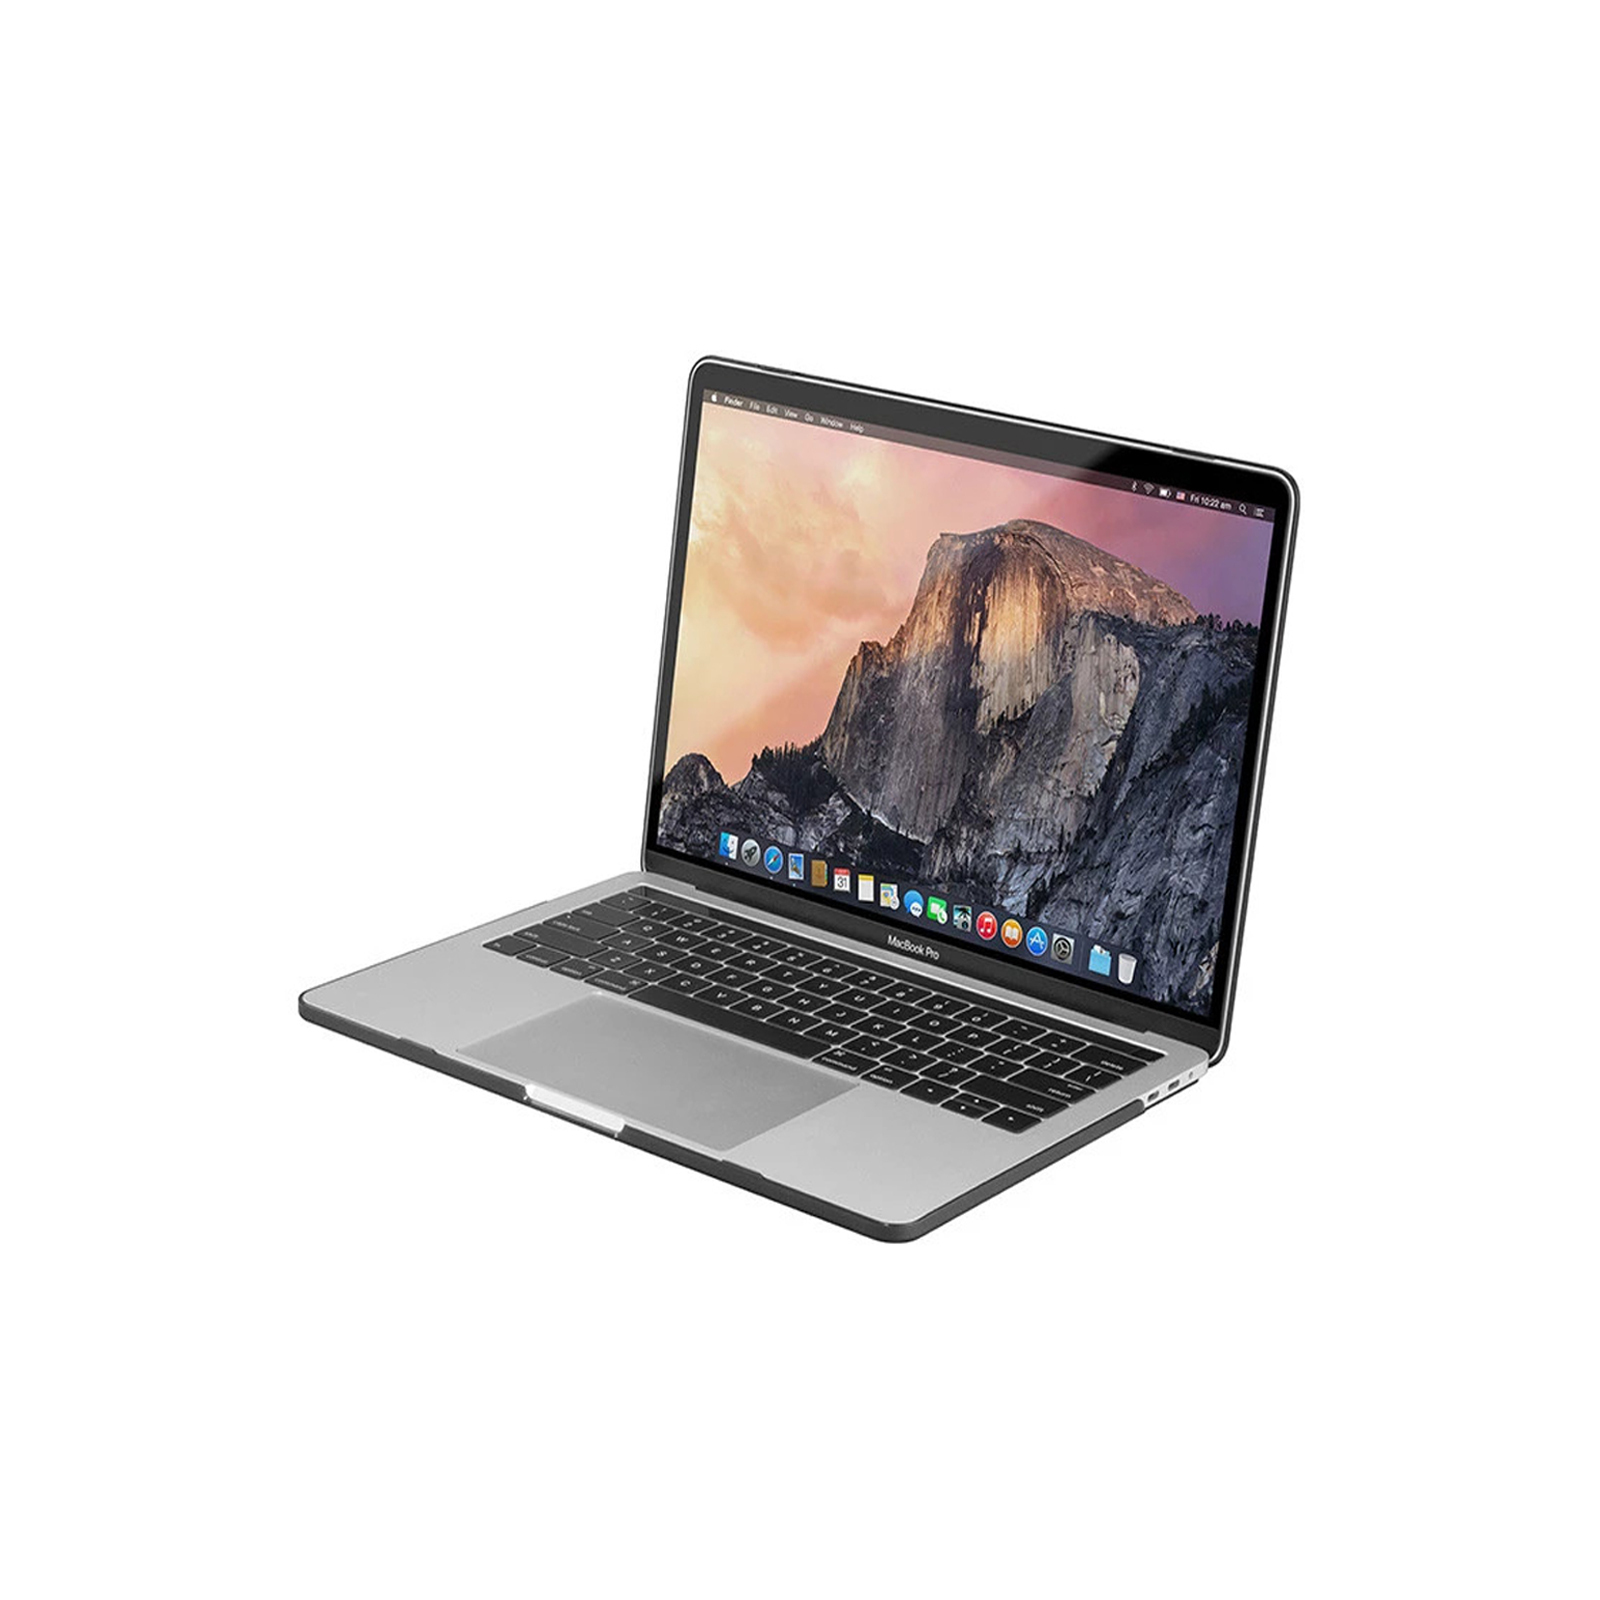 MacBook Pro 13" Mid 2012 - Core i7 2.9Ghz / 8GB RAM / 256GB SSD